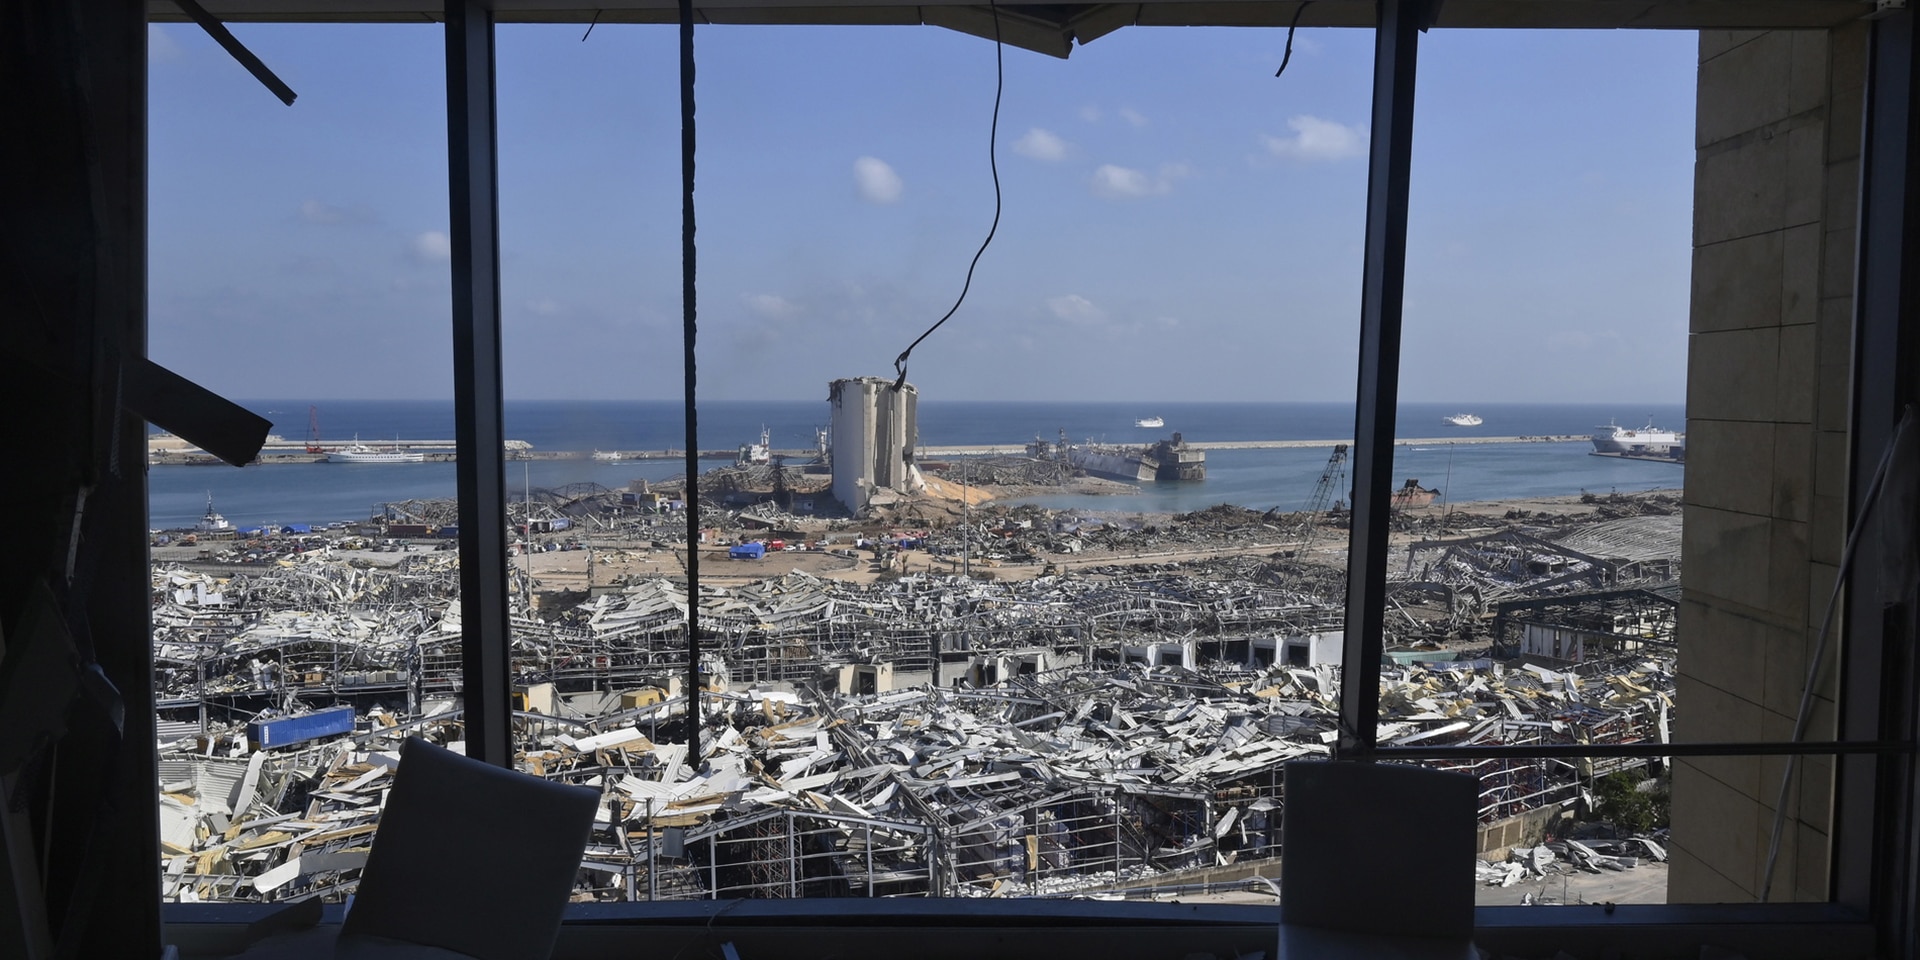 Scorcio del porto e di una parte della città di Beirut dopo la tragica esplosione del 4 agosto 2020.